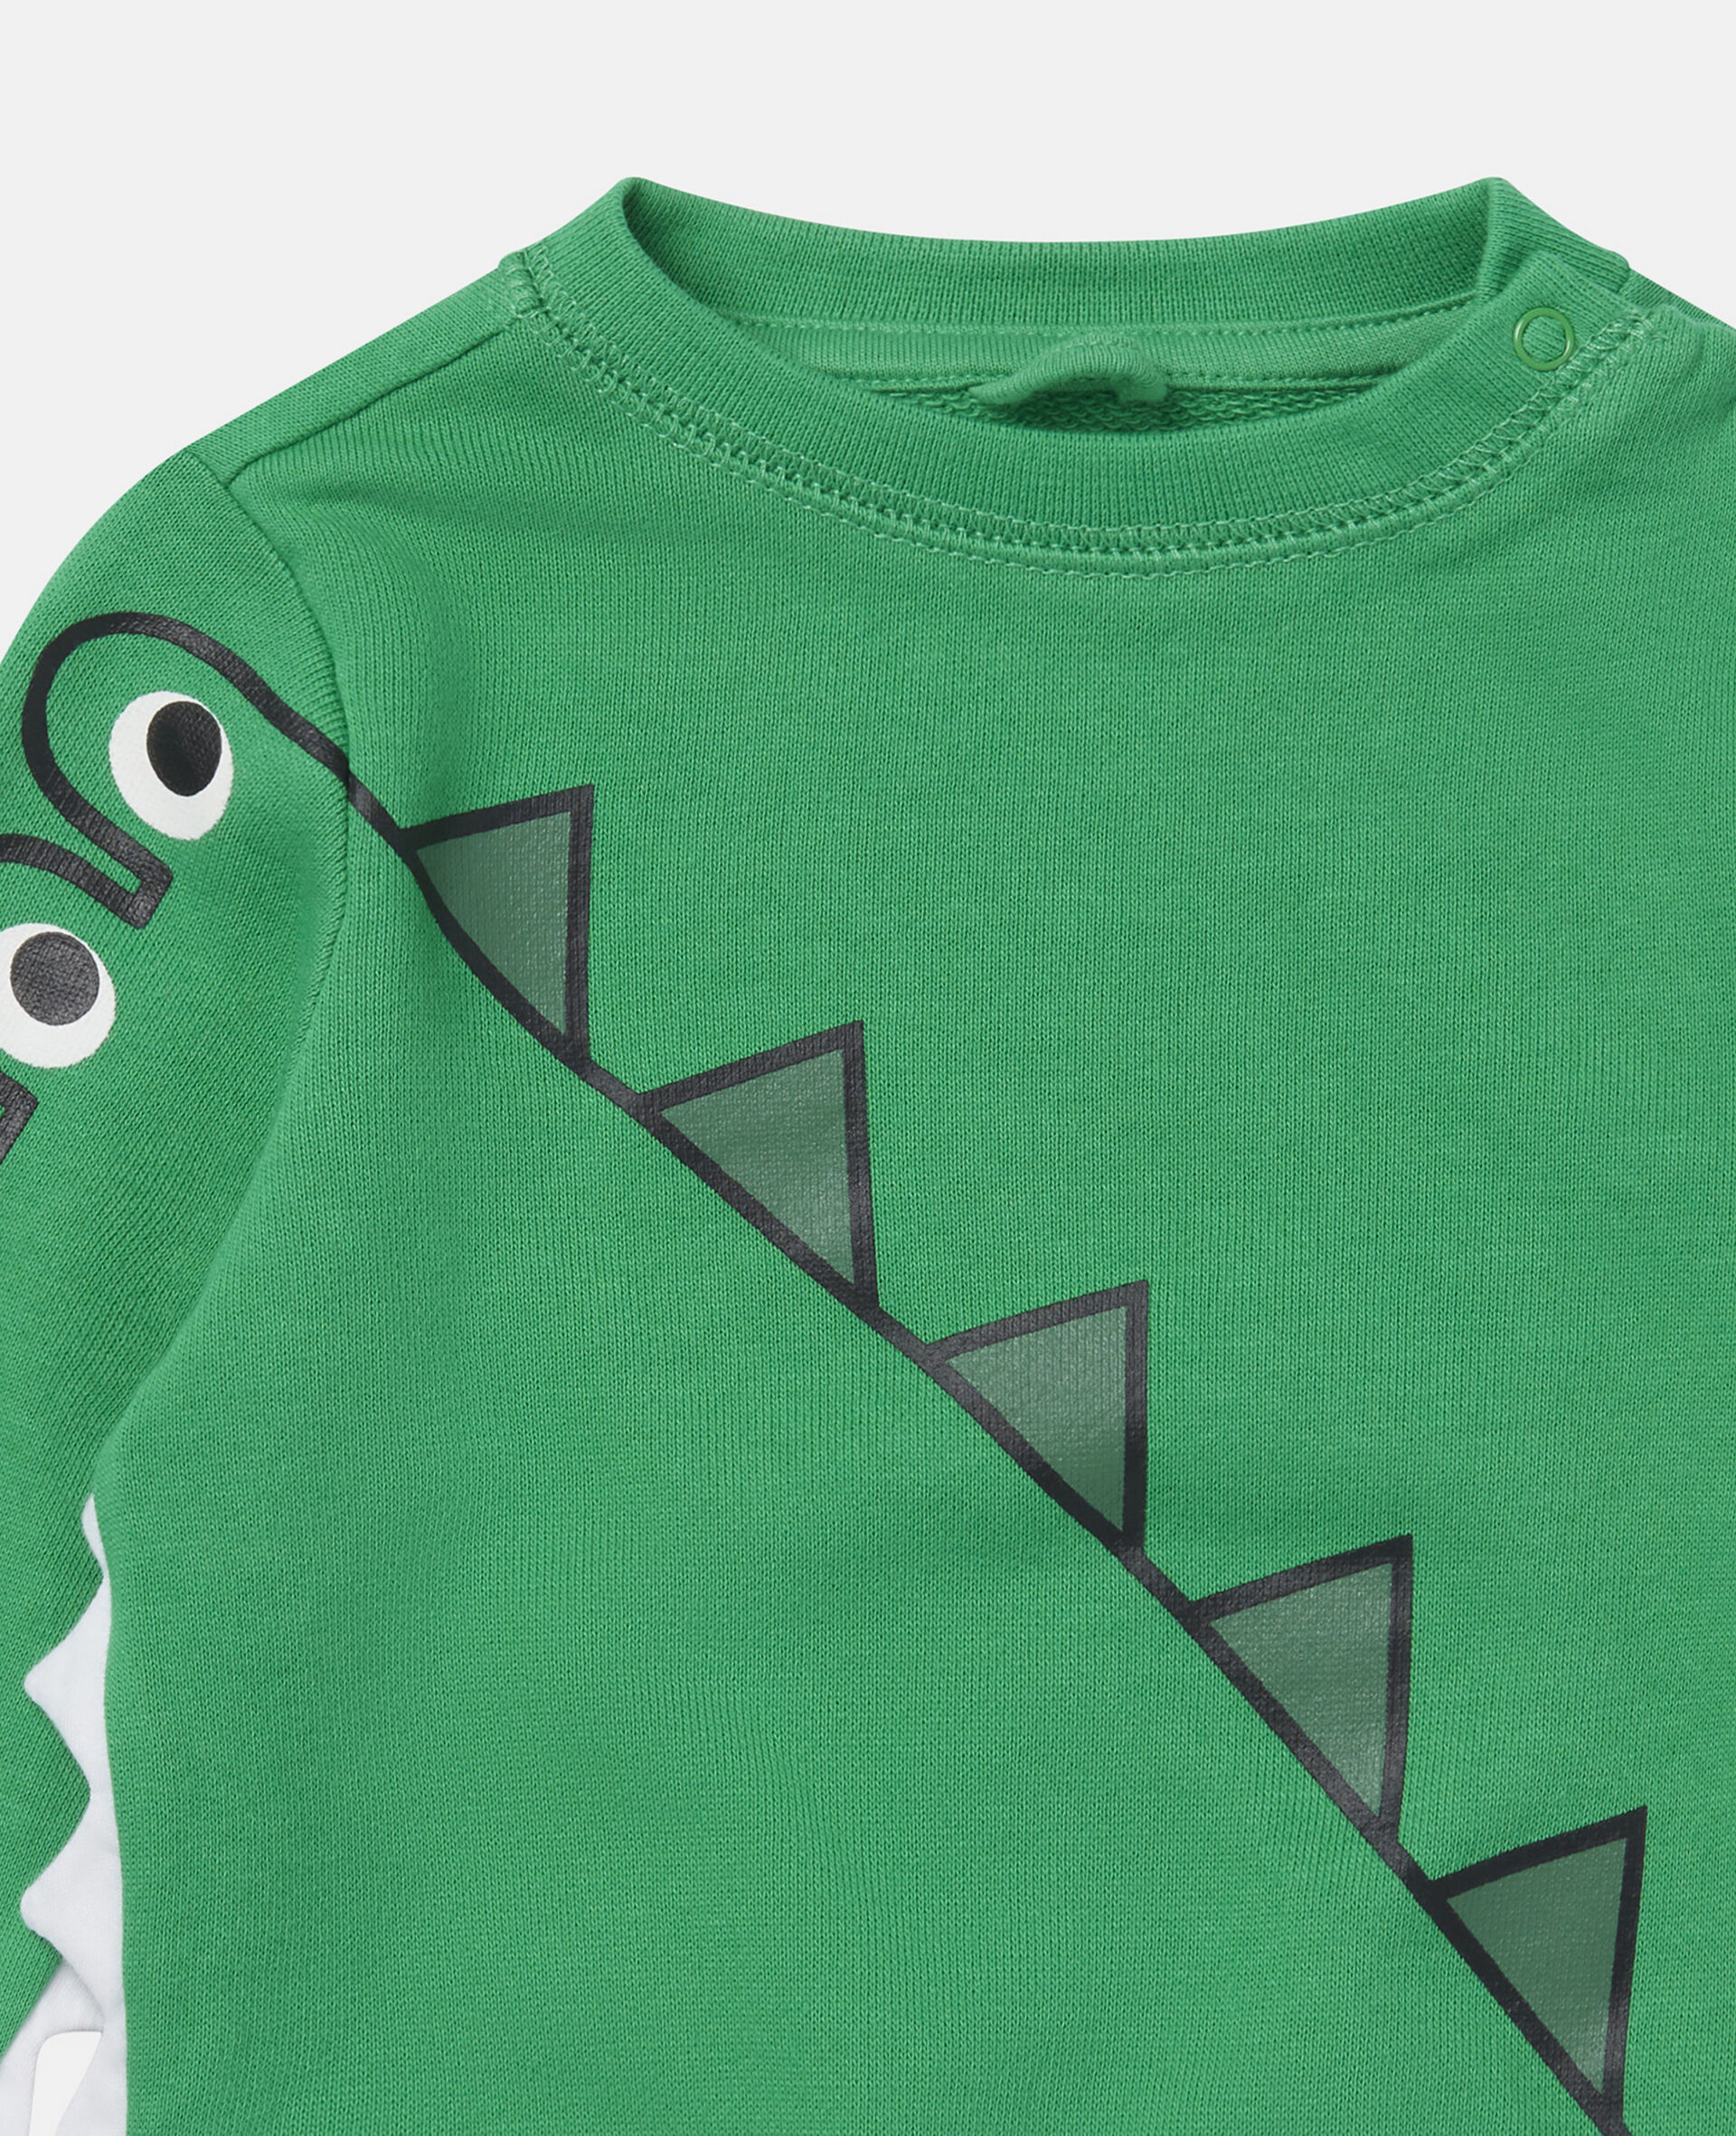 Crocodile & Spike Print Cotton Fleece Sweatshirt-Green-large image number 1